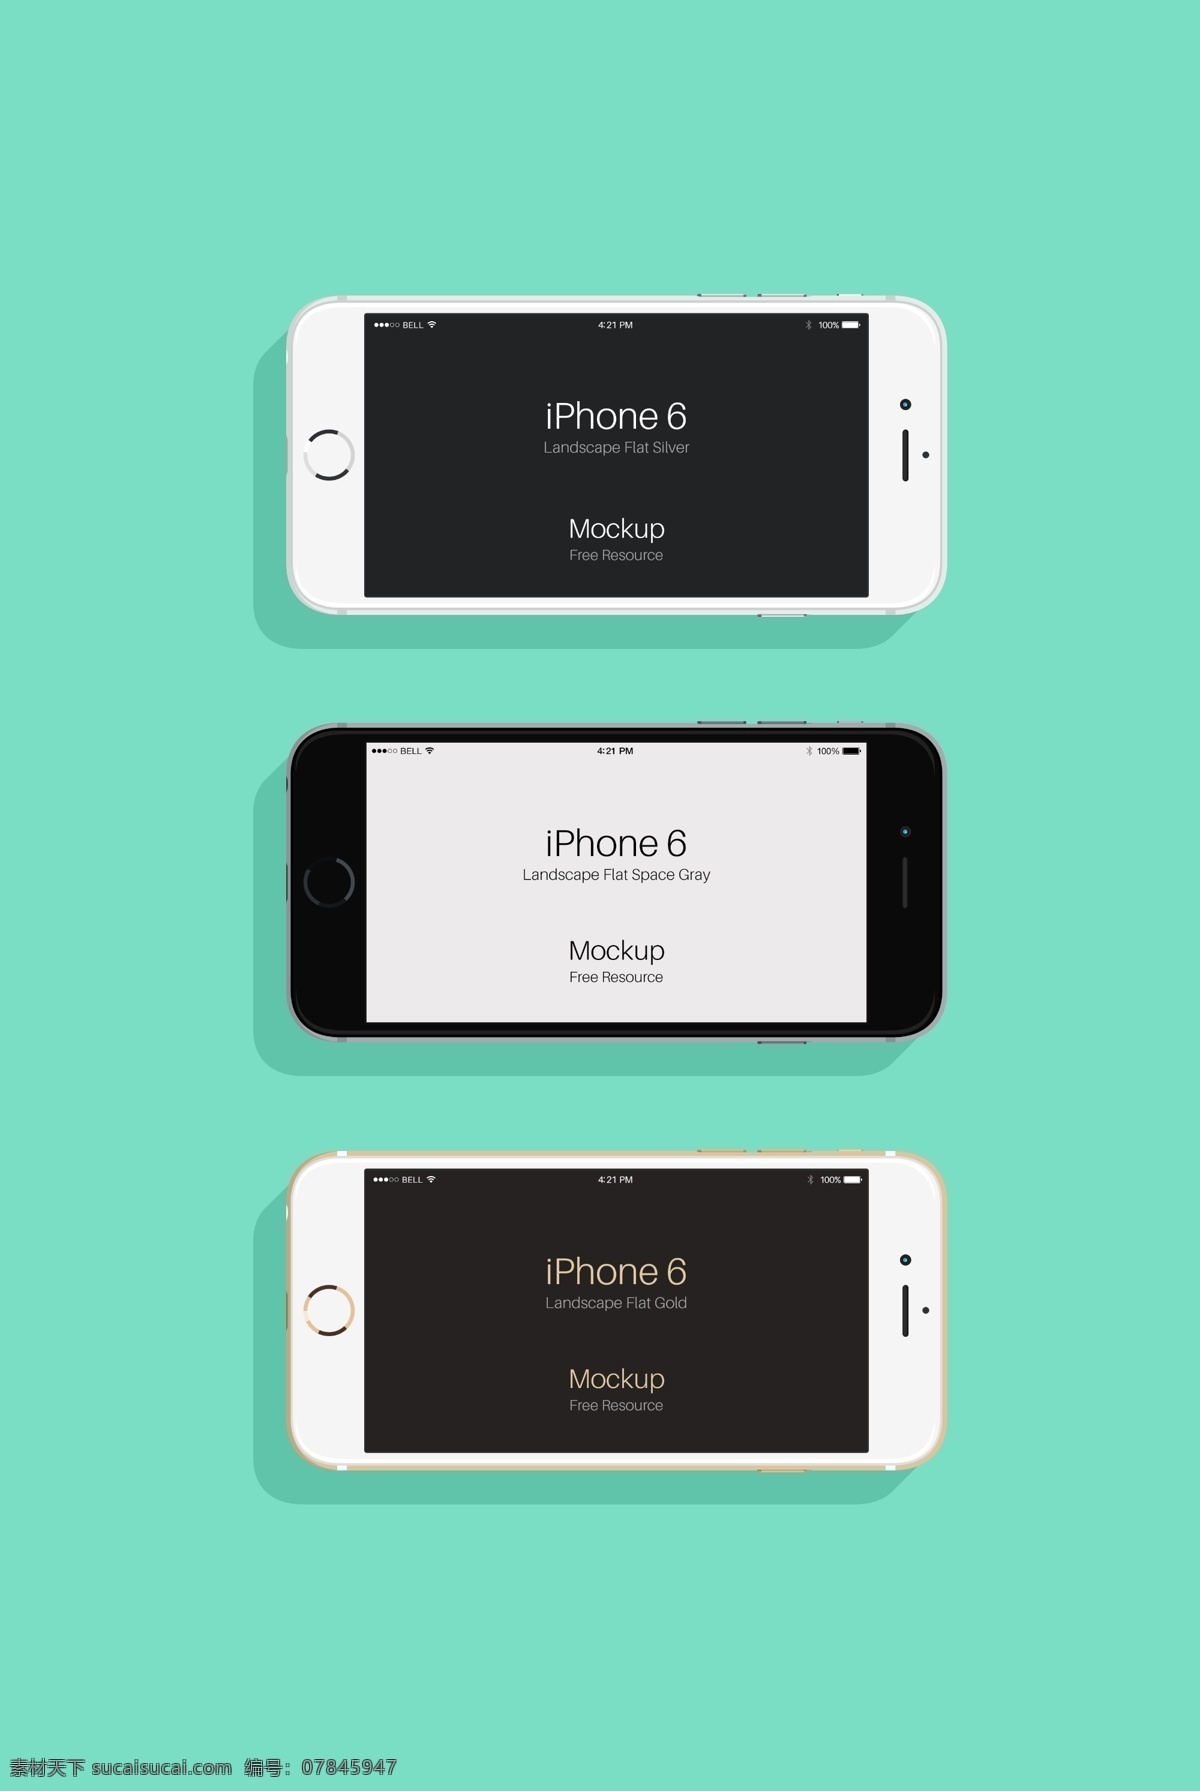 iphone6 高清 正面 苹果 大图 数码产品 app展示图 数码产品展示 现代科技 青色 天蓝色